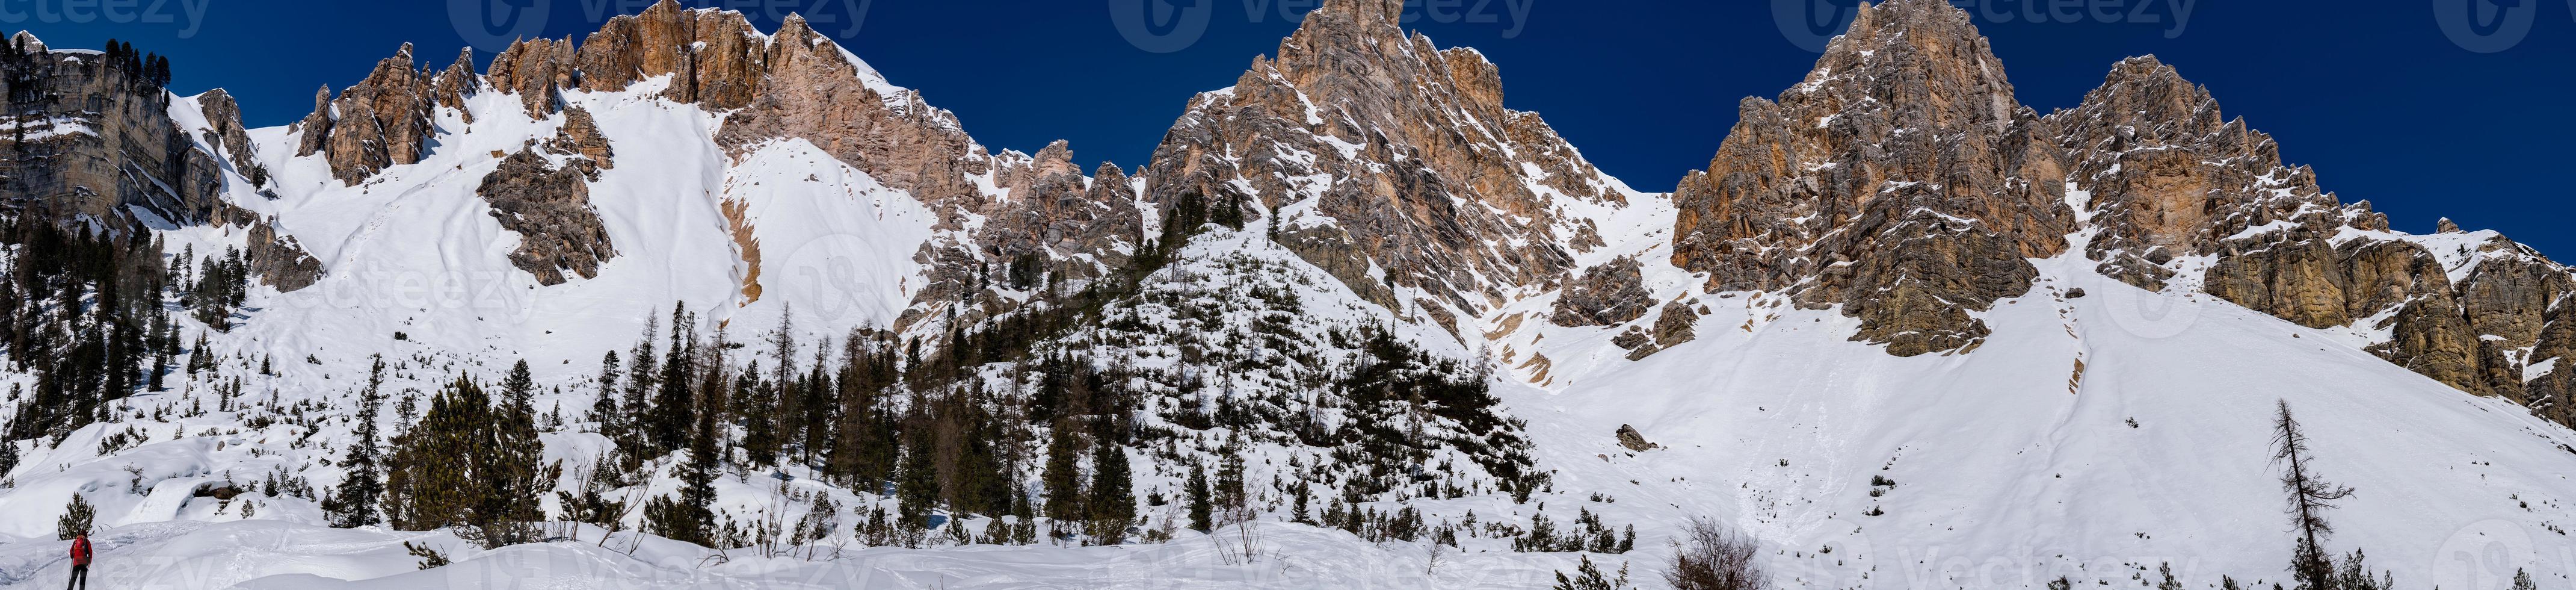 dolomiten schneepanorama groß landschaft foto